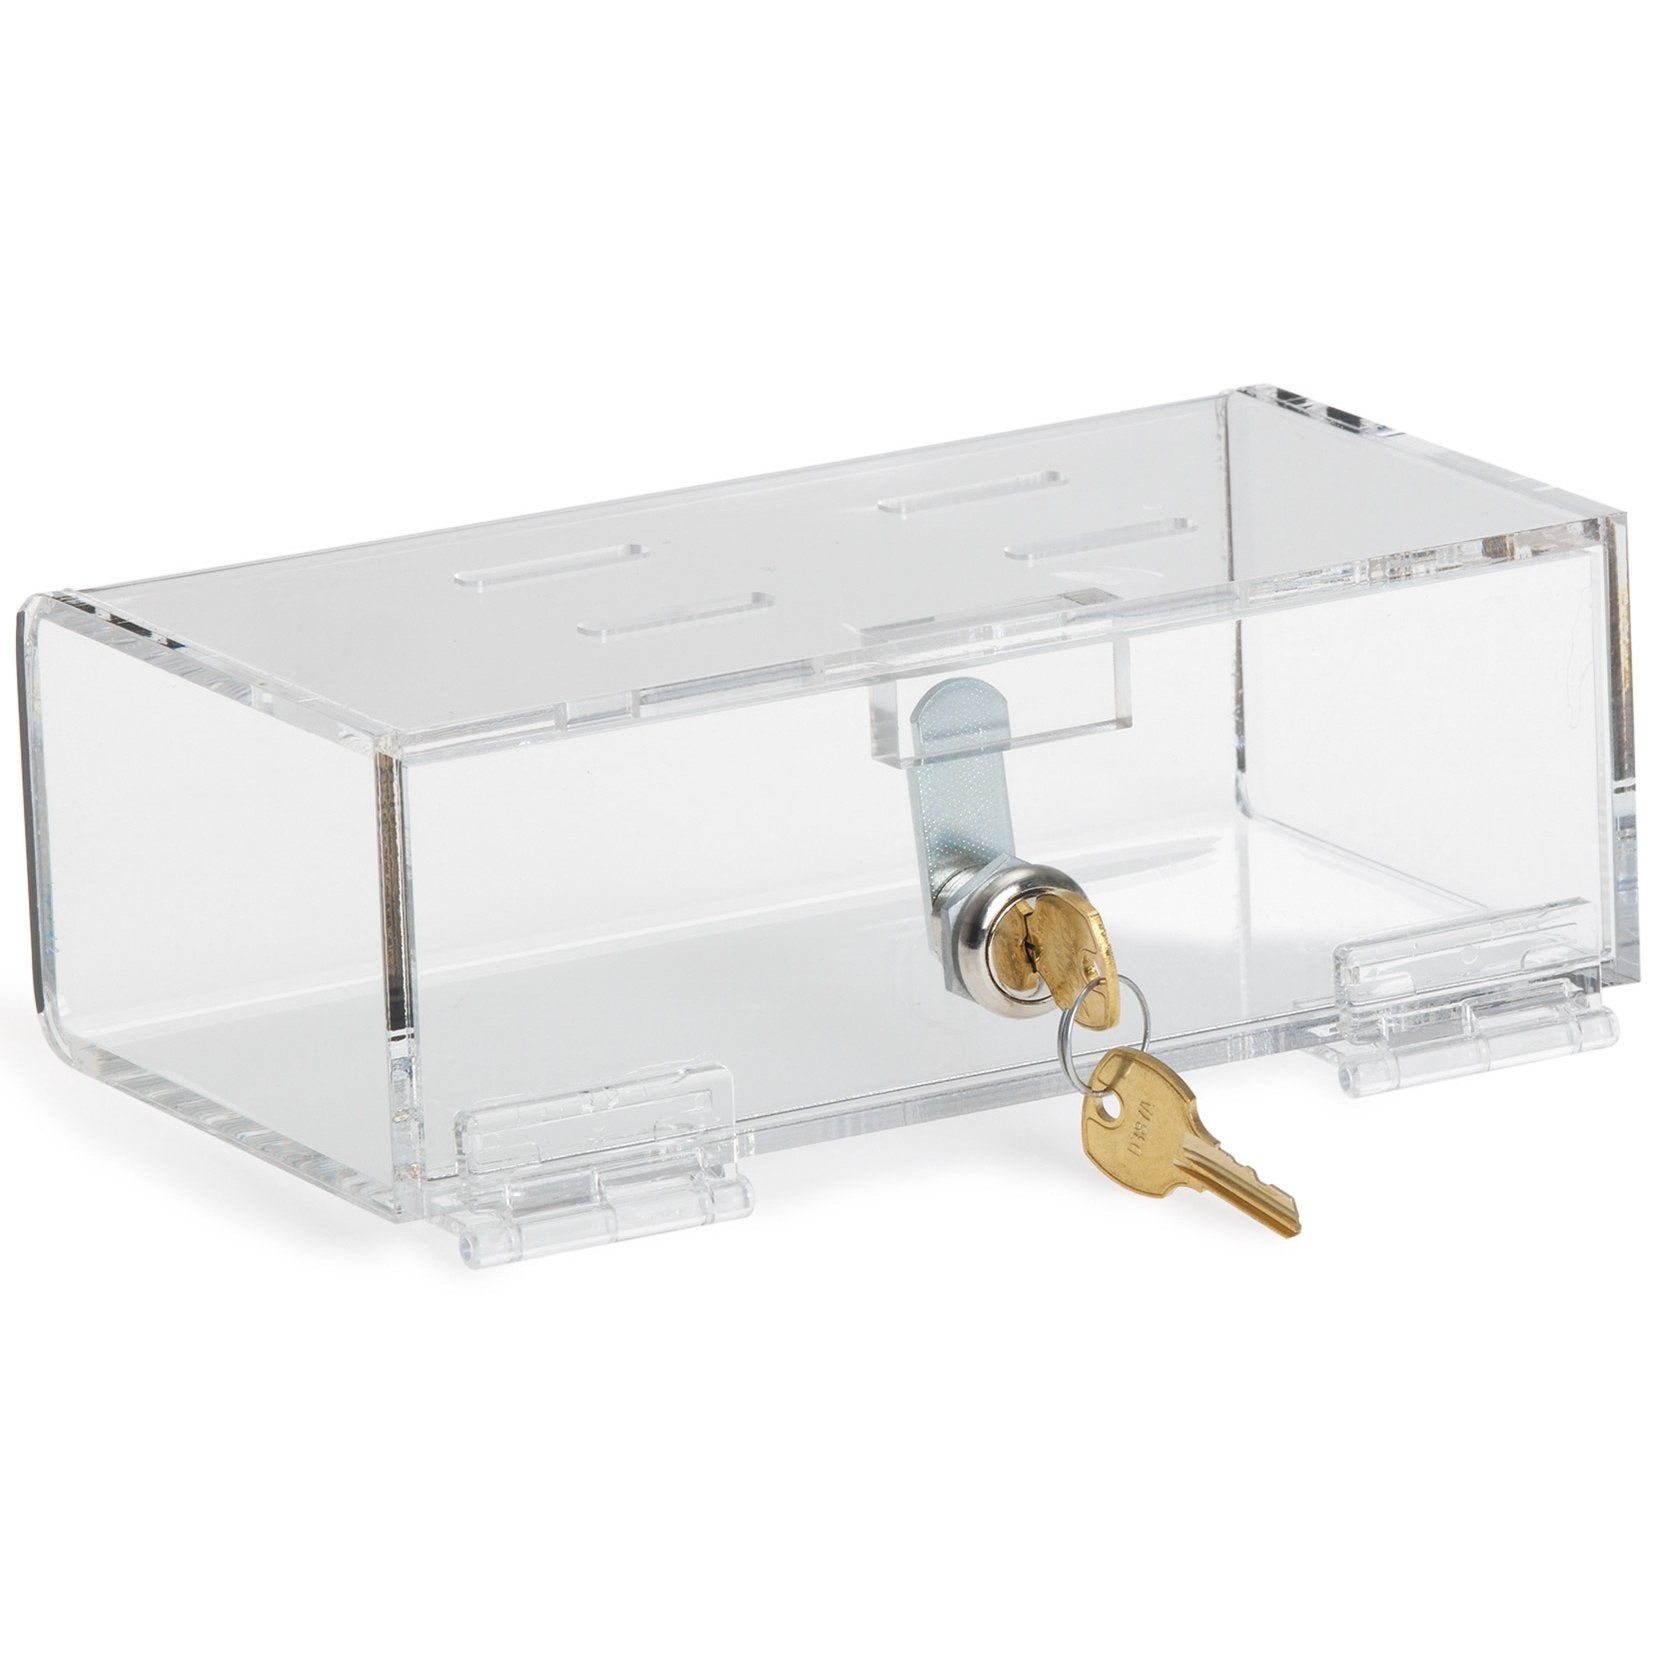 OmniMed 183001 Small Clear Acrylic Refrigerator Lock Box with Key Lock